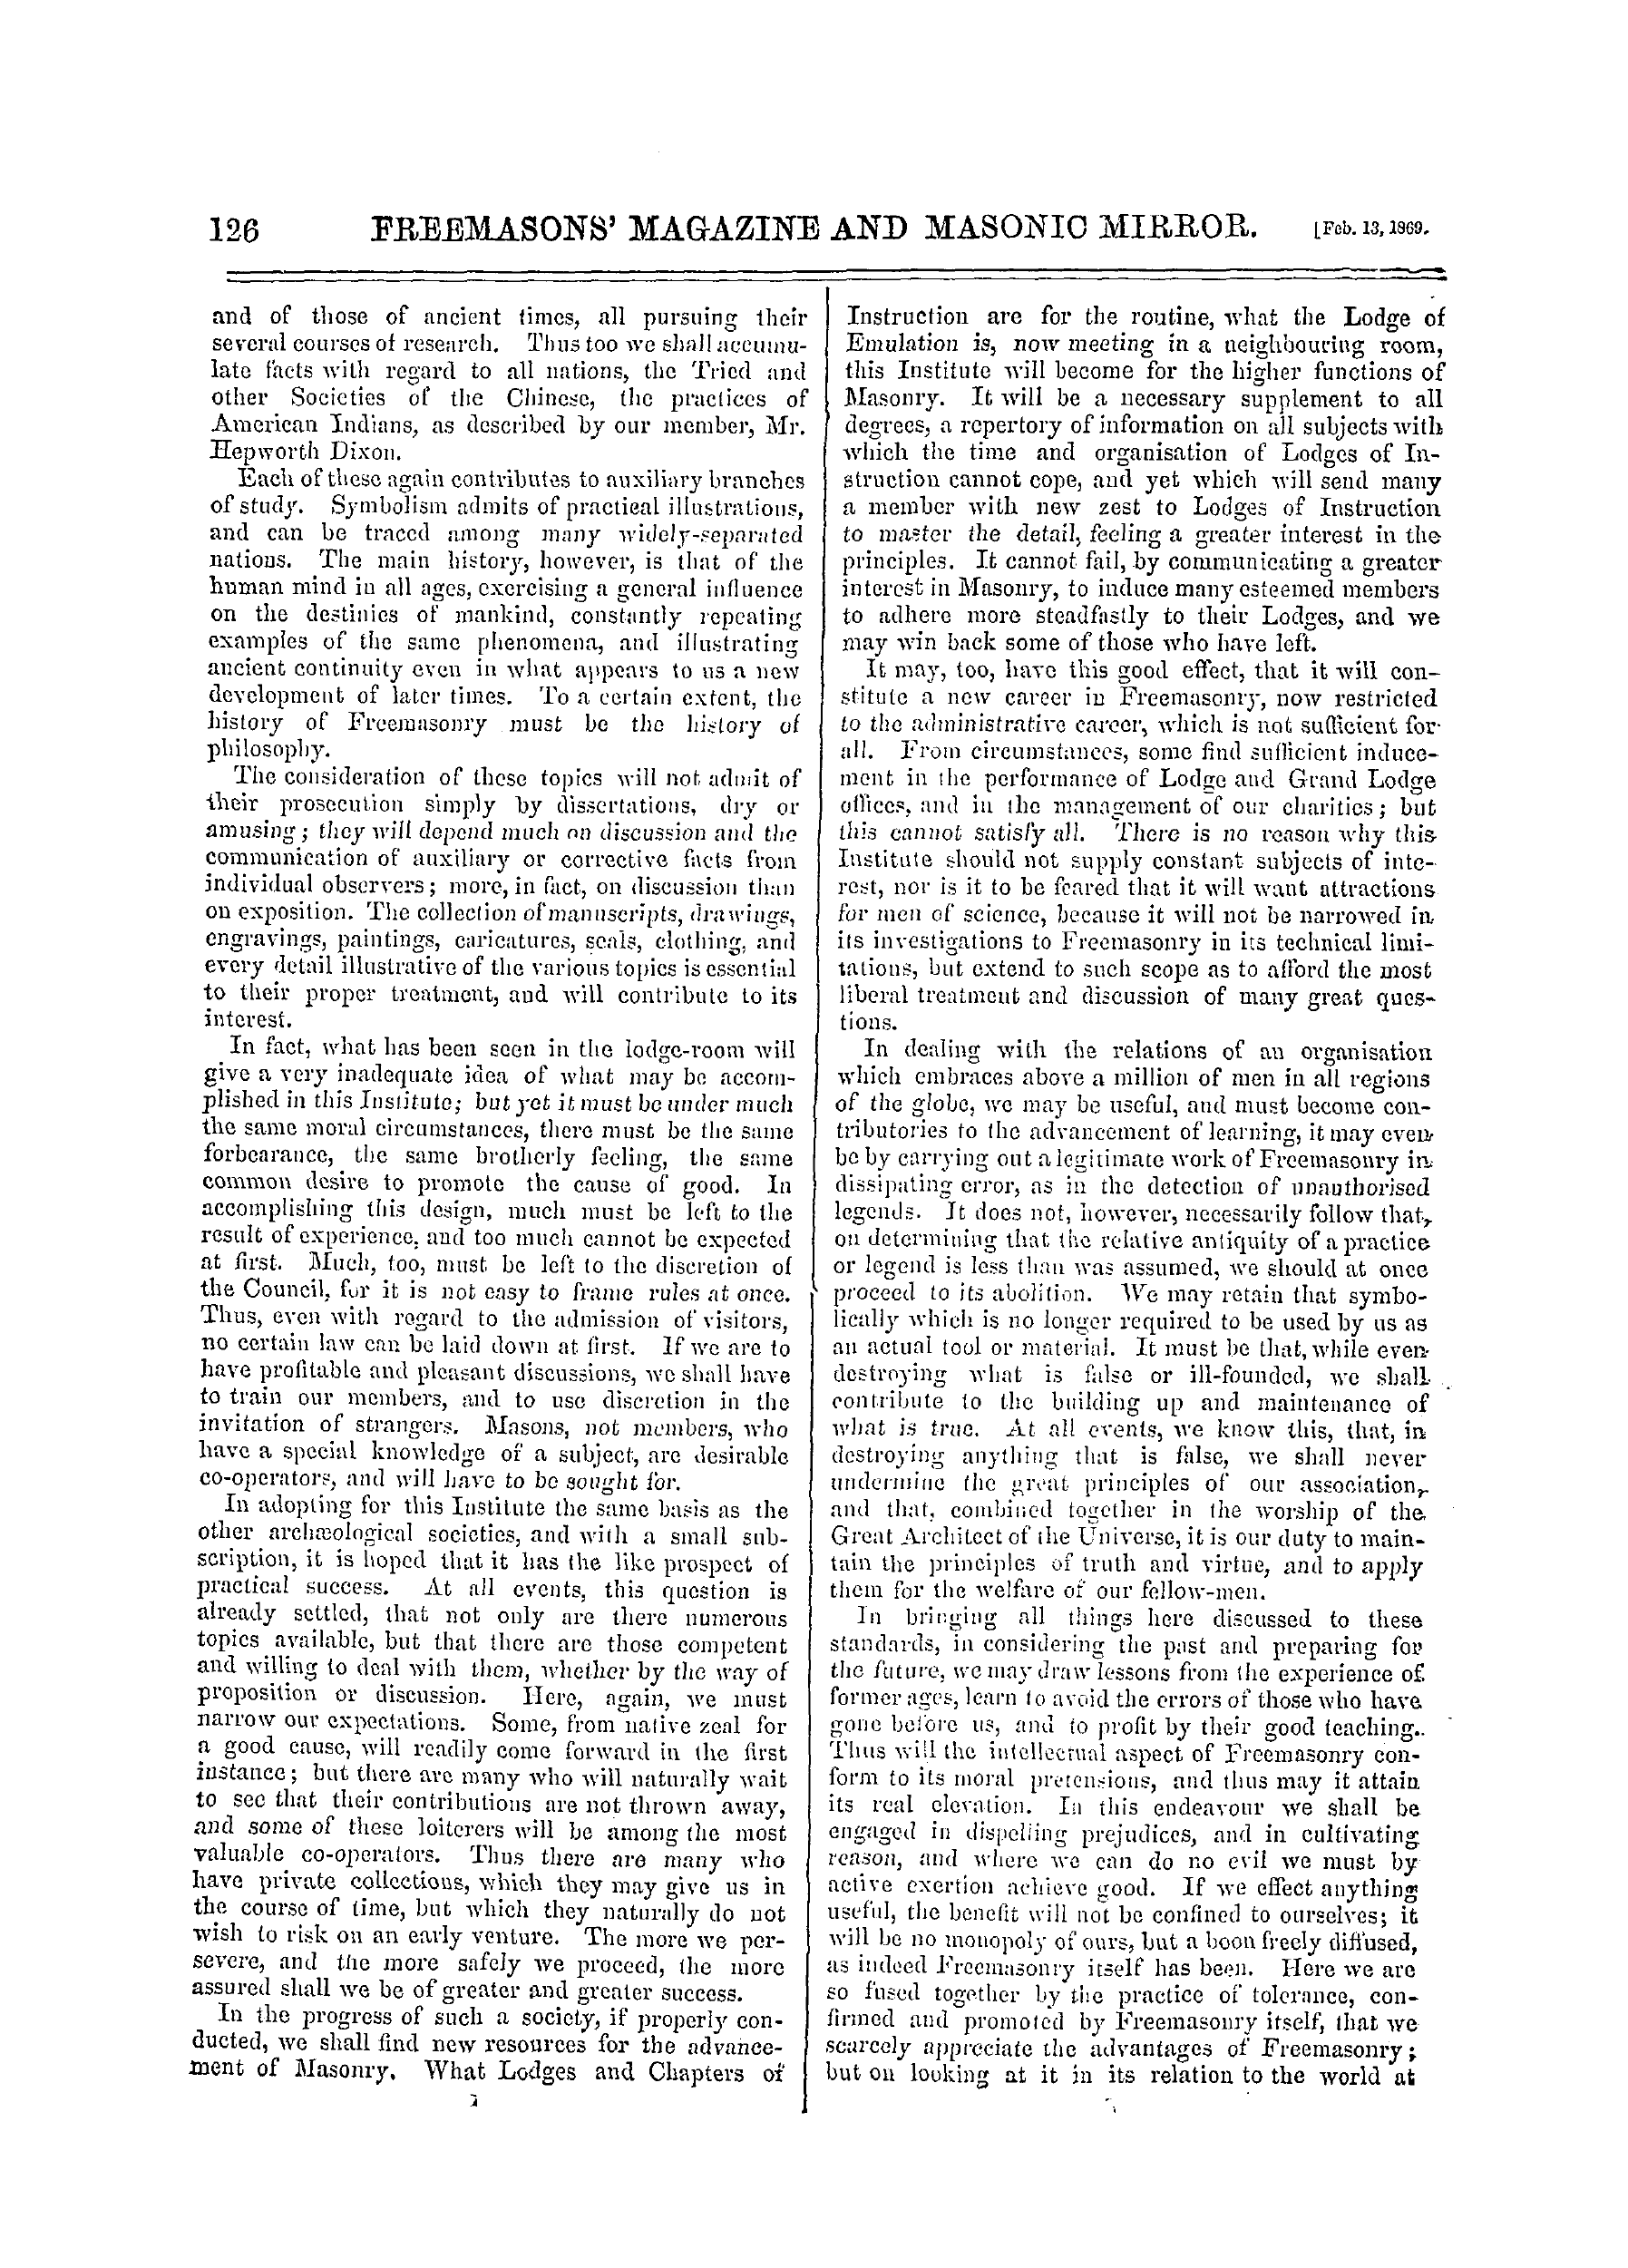 The Freemasons' Monthly Magazine: 1869-02-13: 6